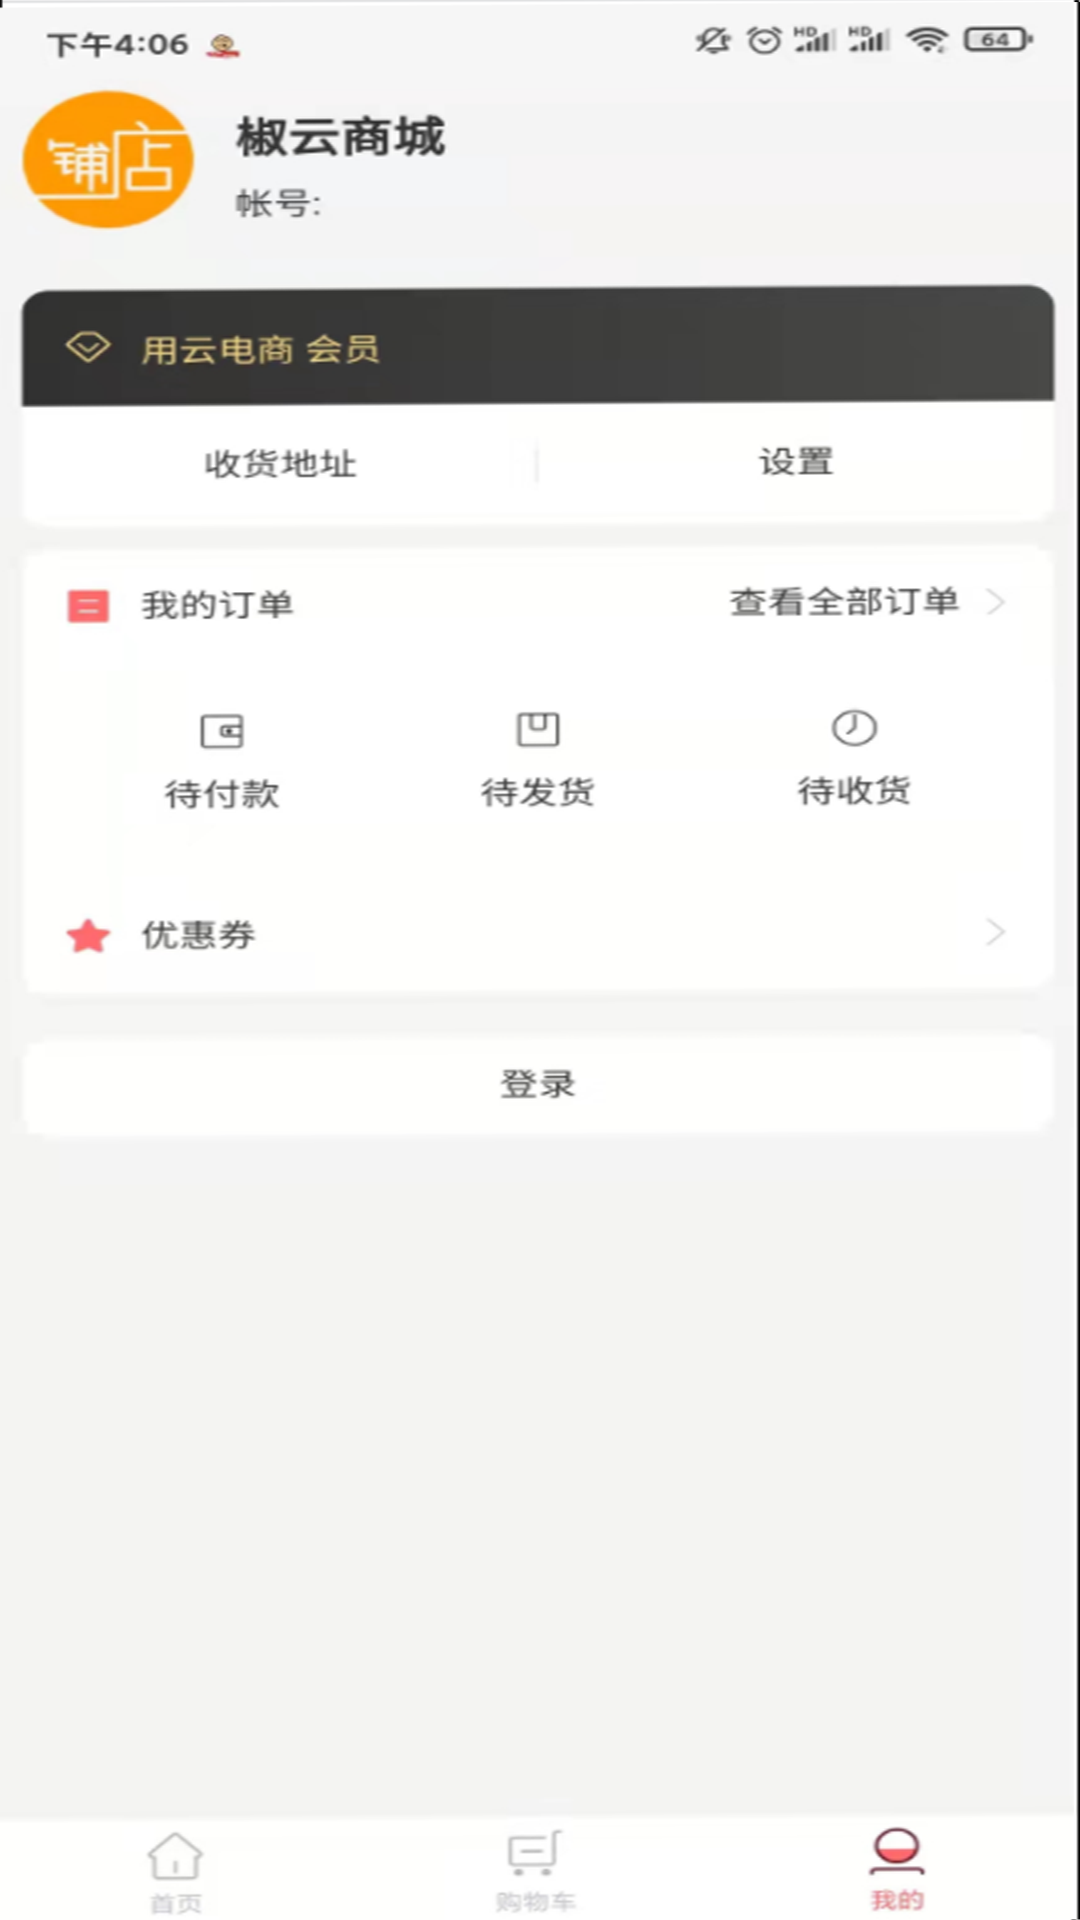 椒goapp下载-椒go精选新鲜果蔬在线购买服务平台安卓版下载v1.0.0